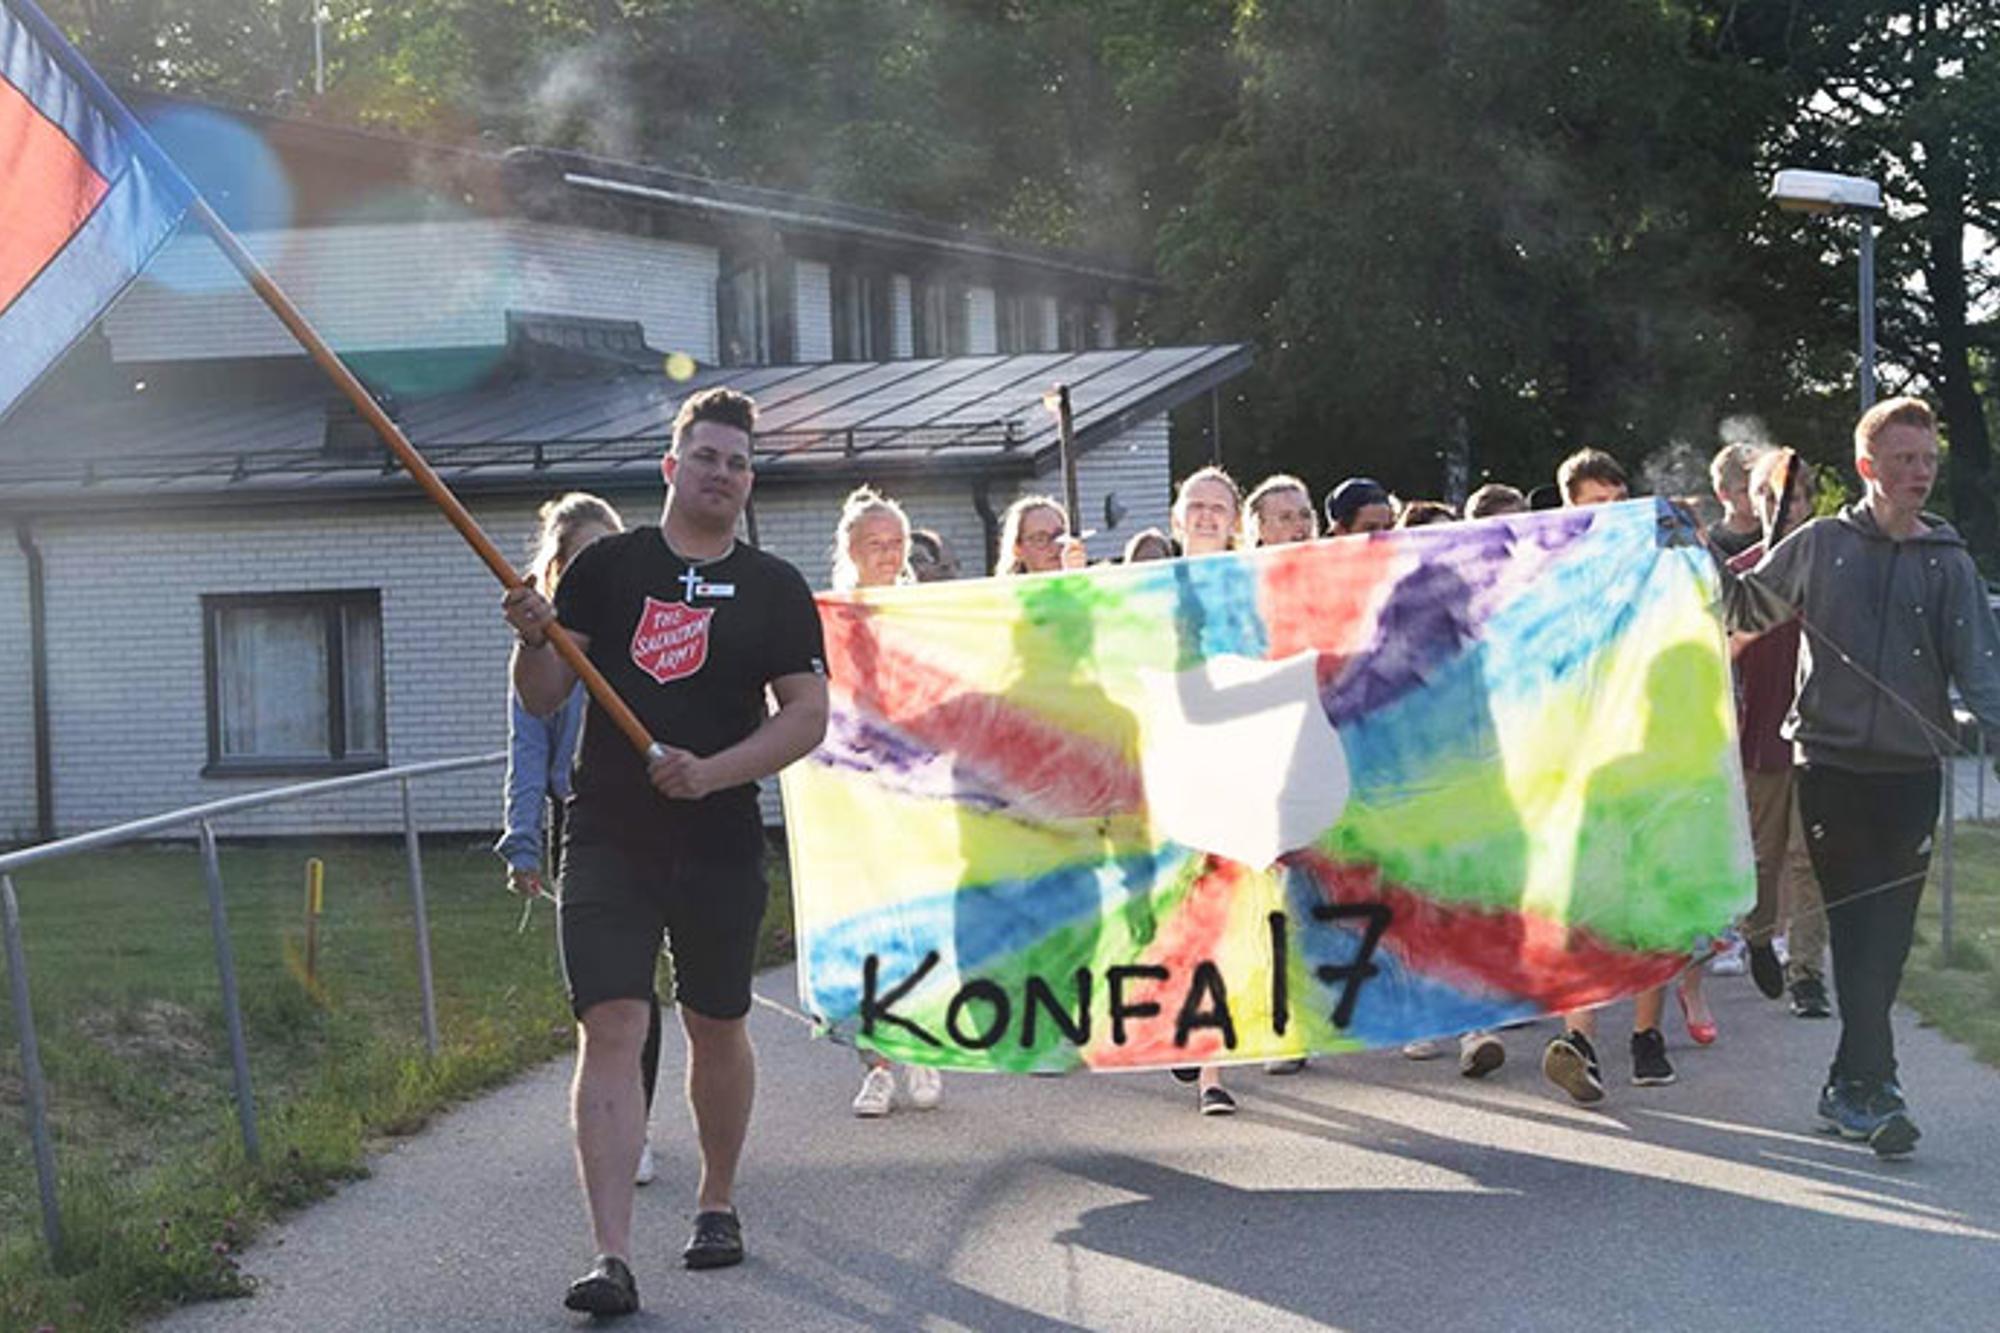 Längst fram går det en man från Frälsningsarmén som håller i en flagga. Bakom honom går ett gäng konfirmander som håller i ett färgglatt skynke med texten "Konfa 17".